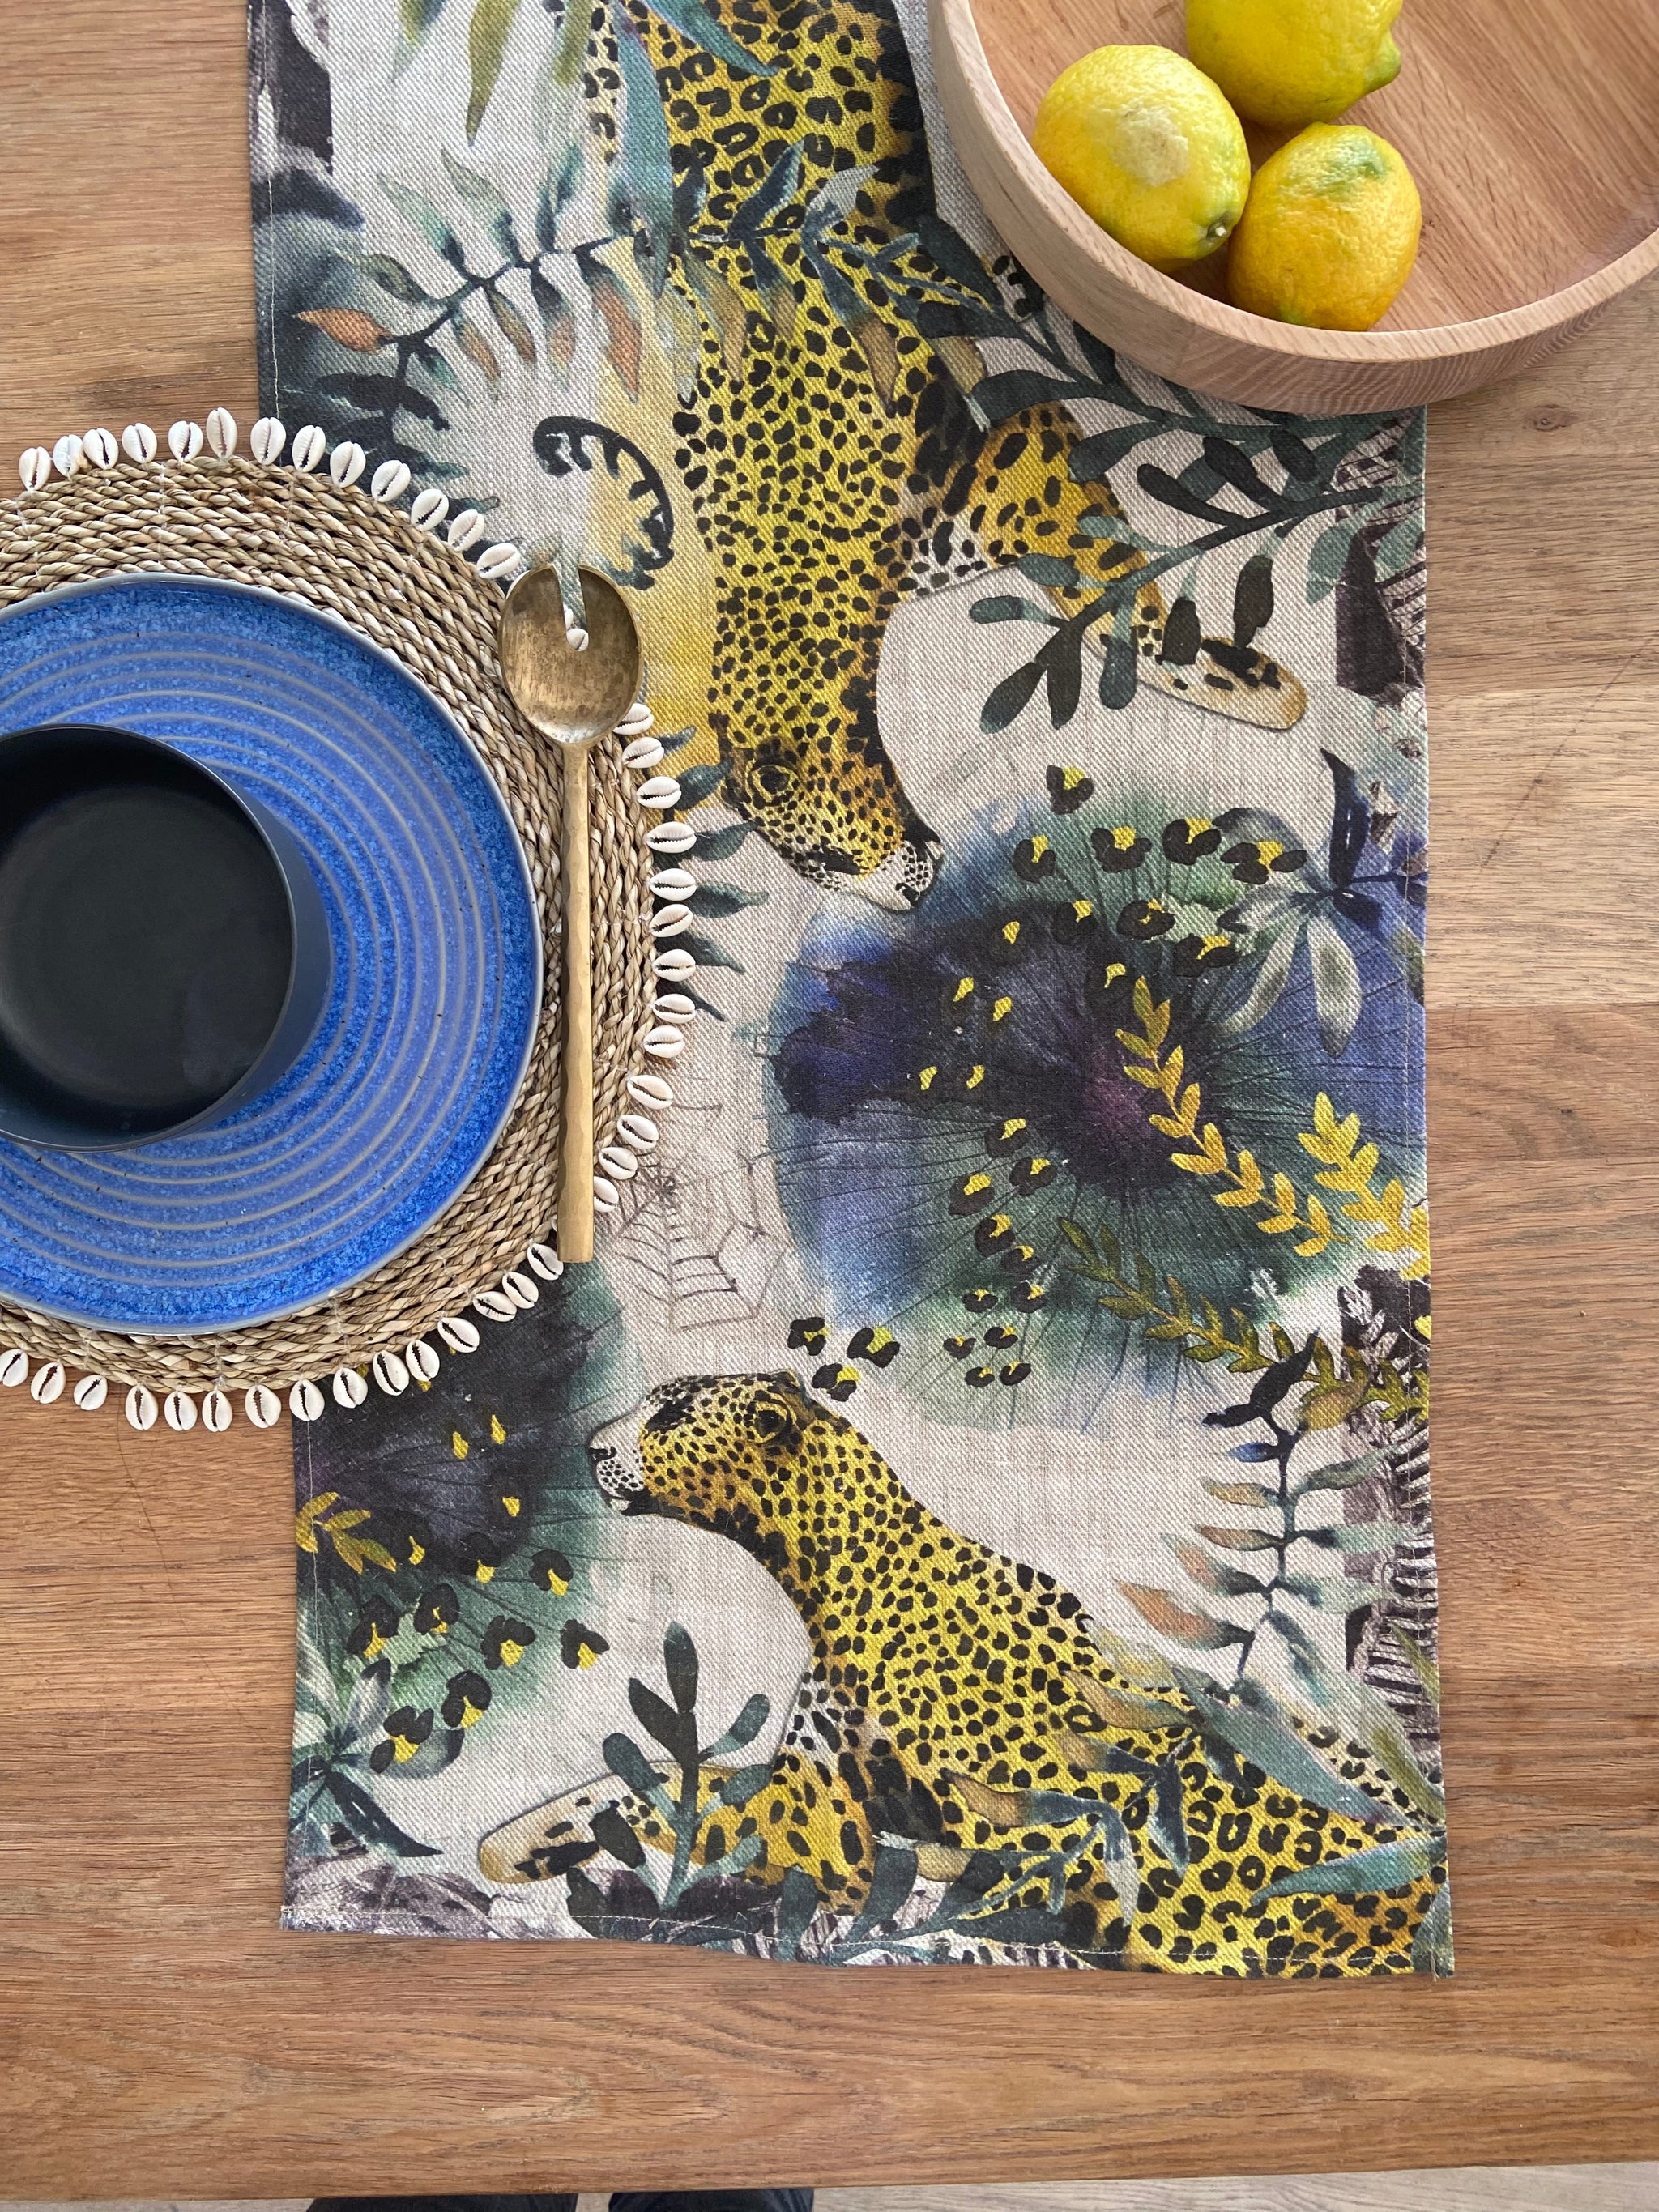 Leopard Table Runner, Medium, Belgian Linen